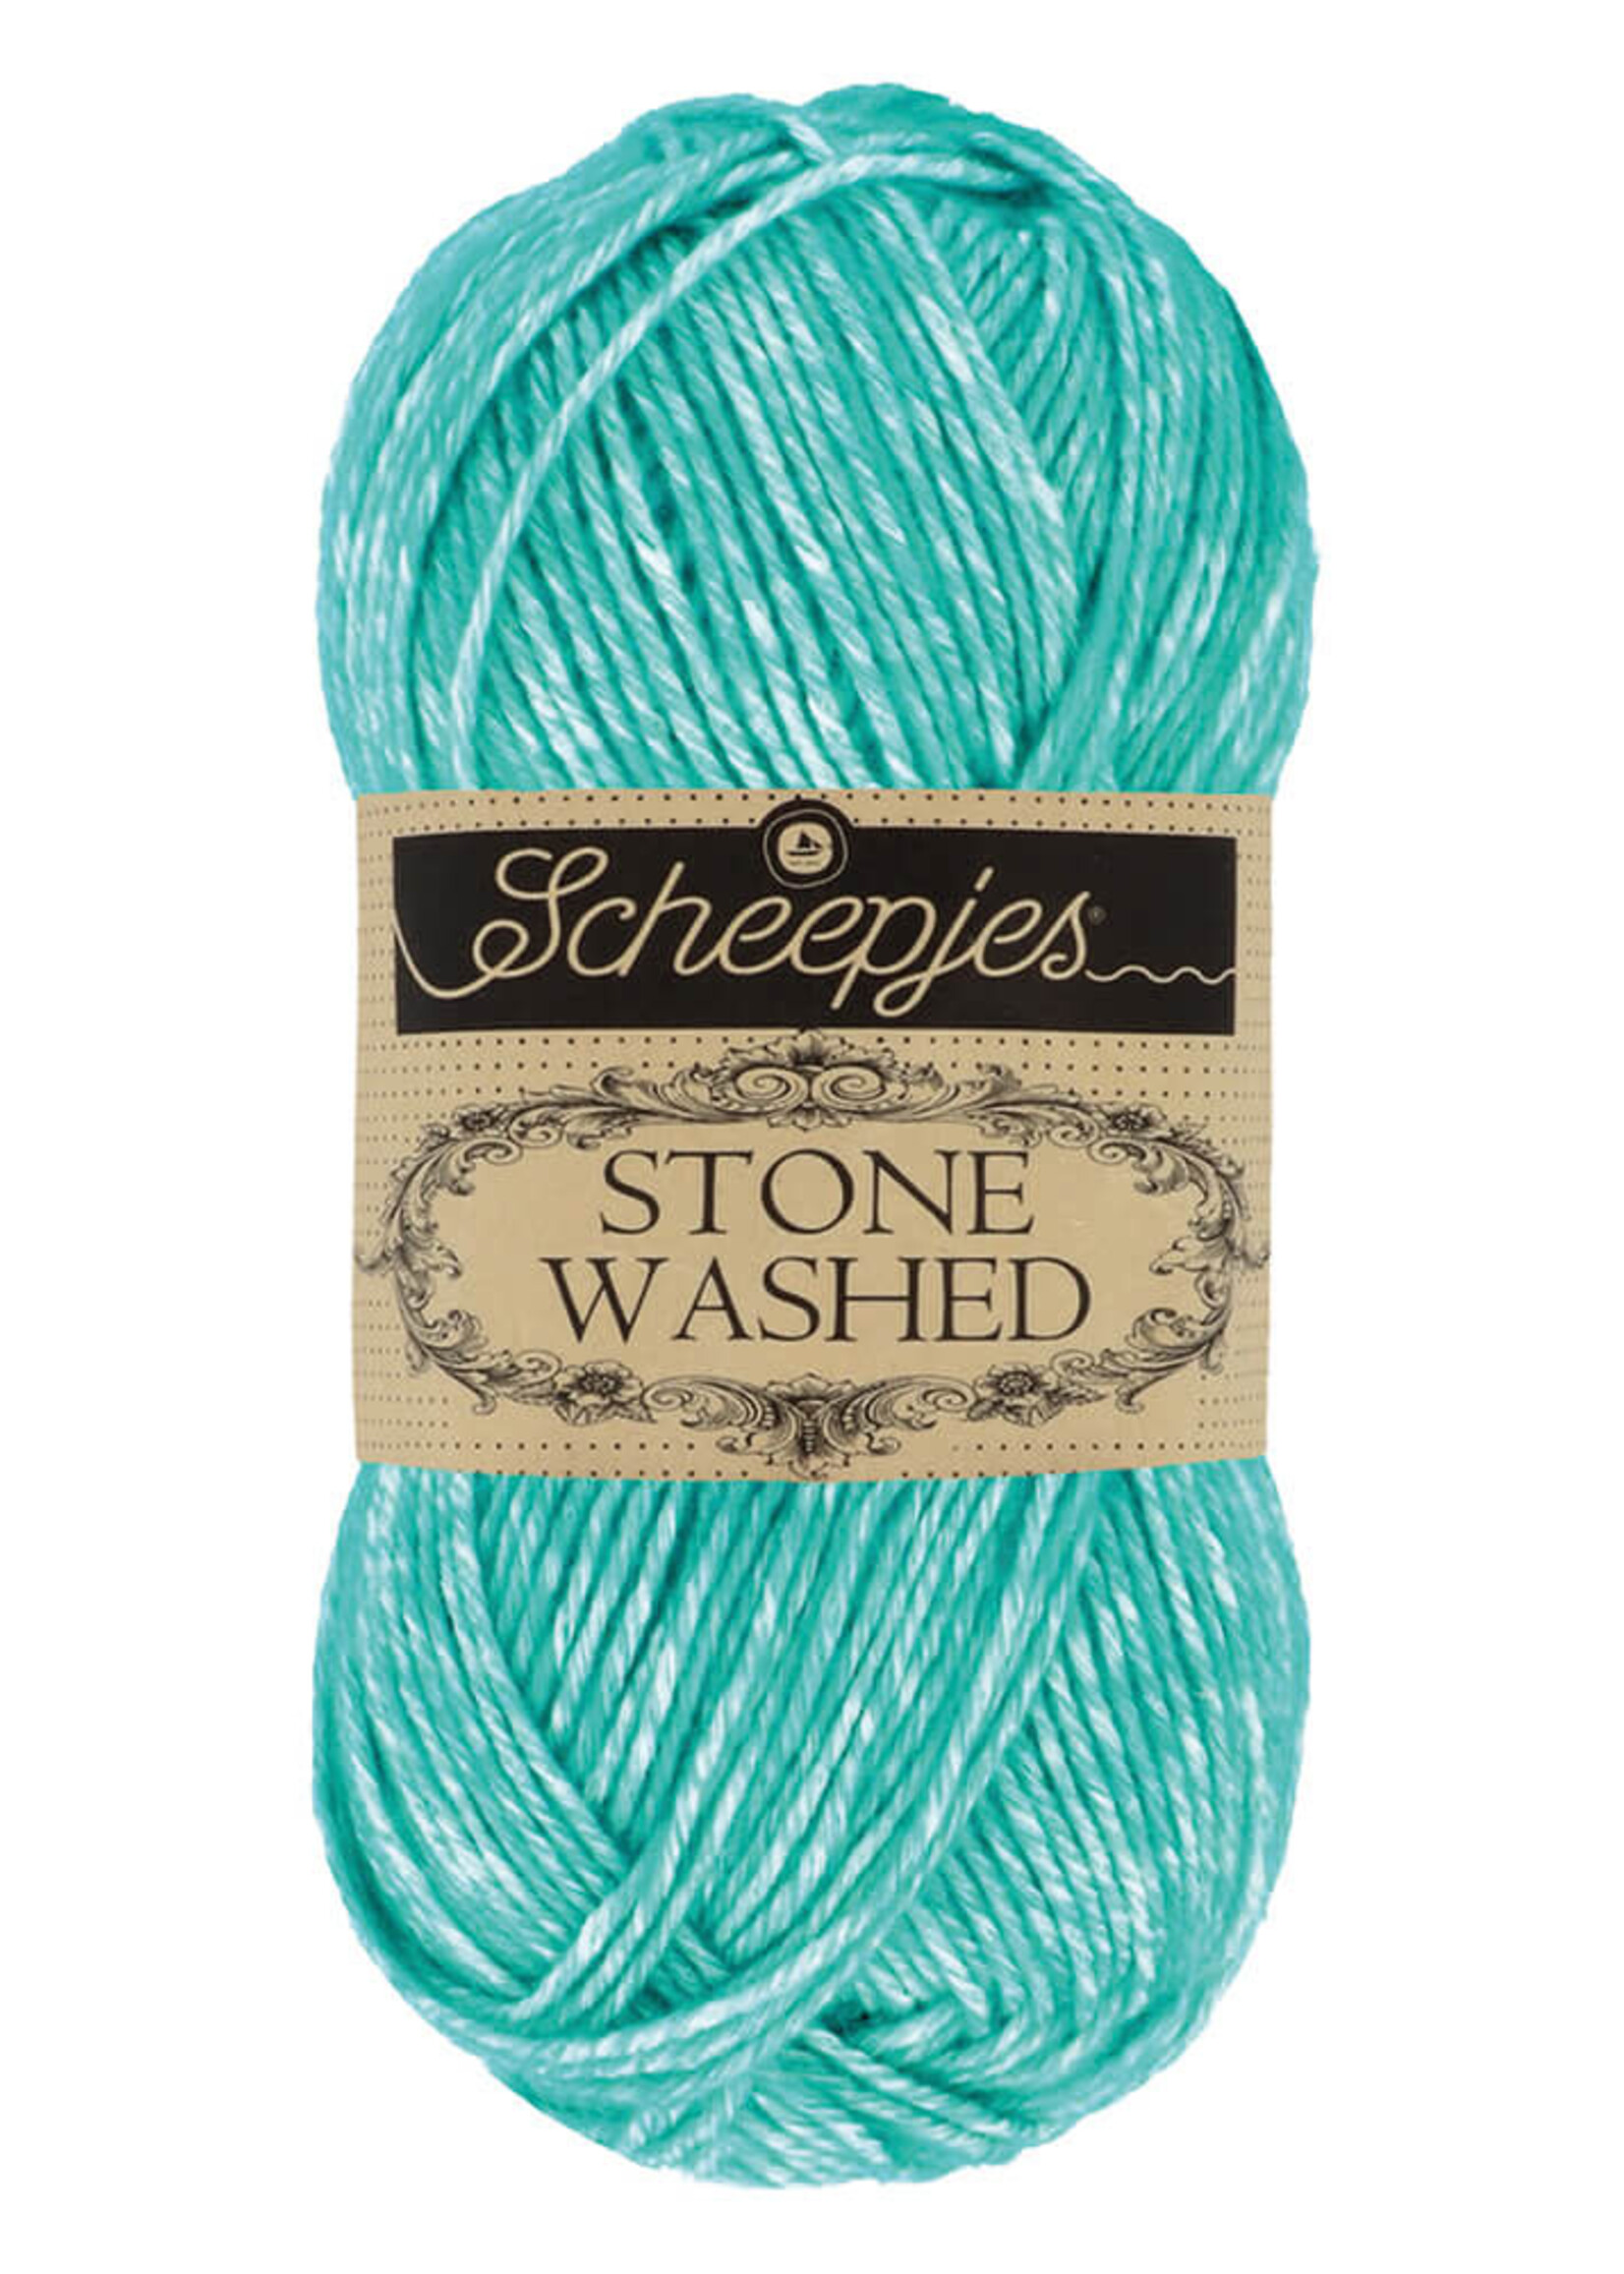 Scheepjes Stone Washed - Scheepjes -824 Turquoise